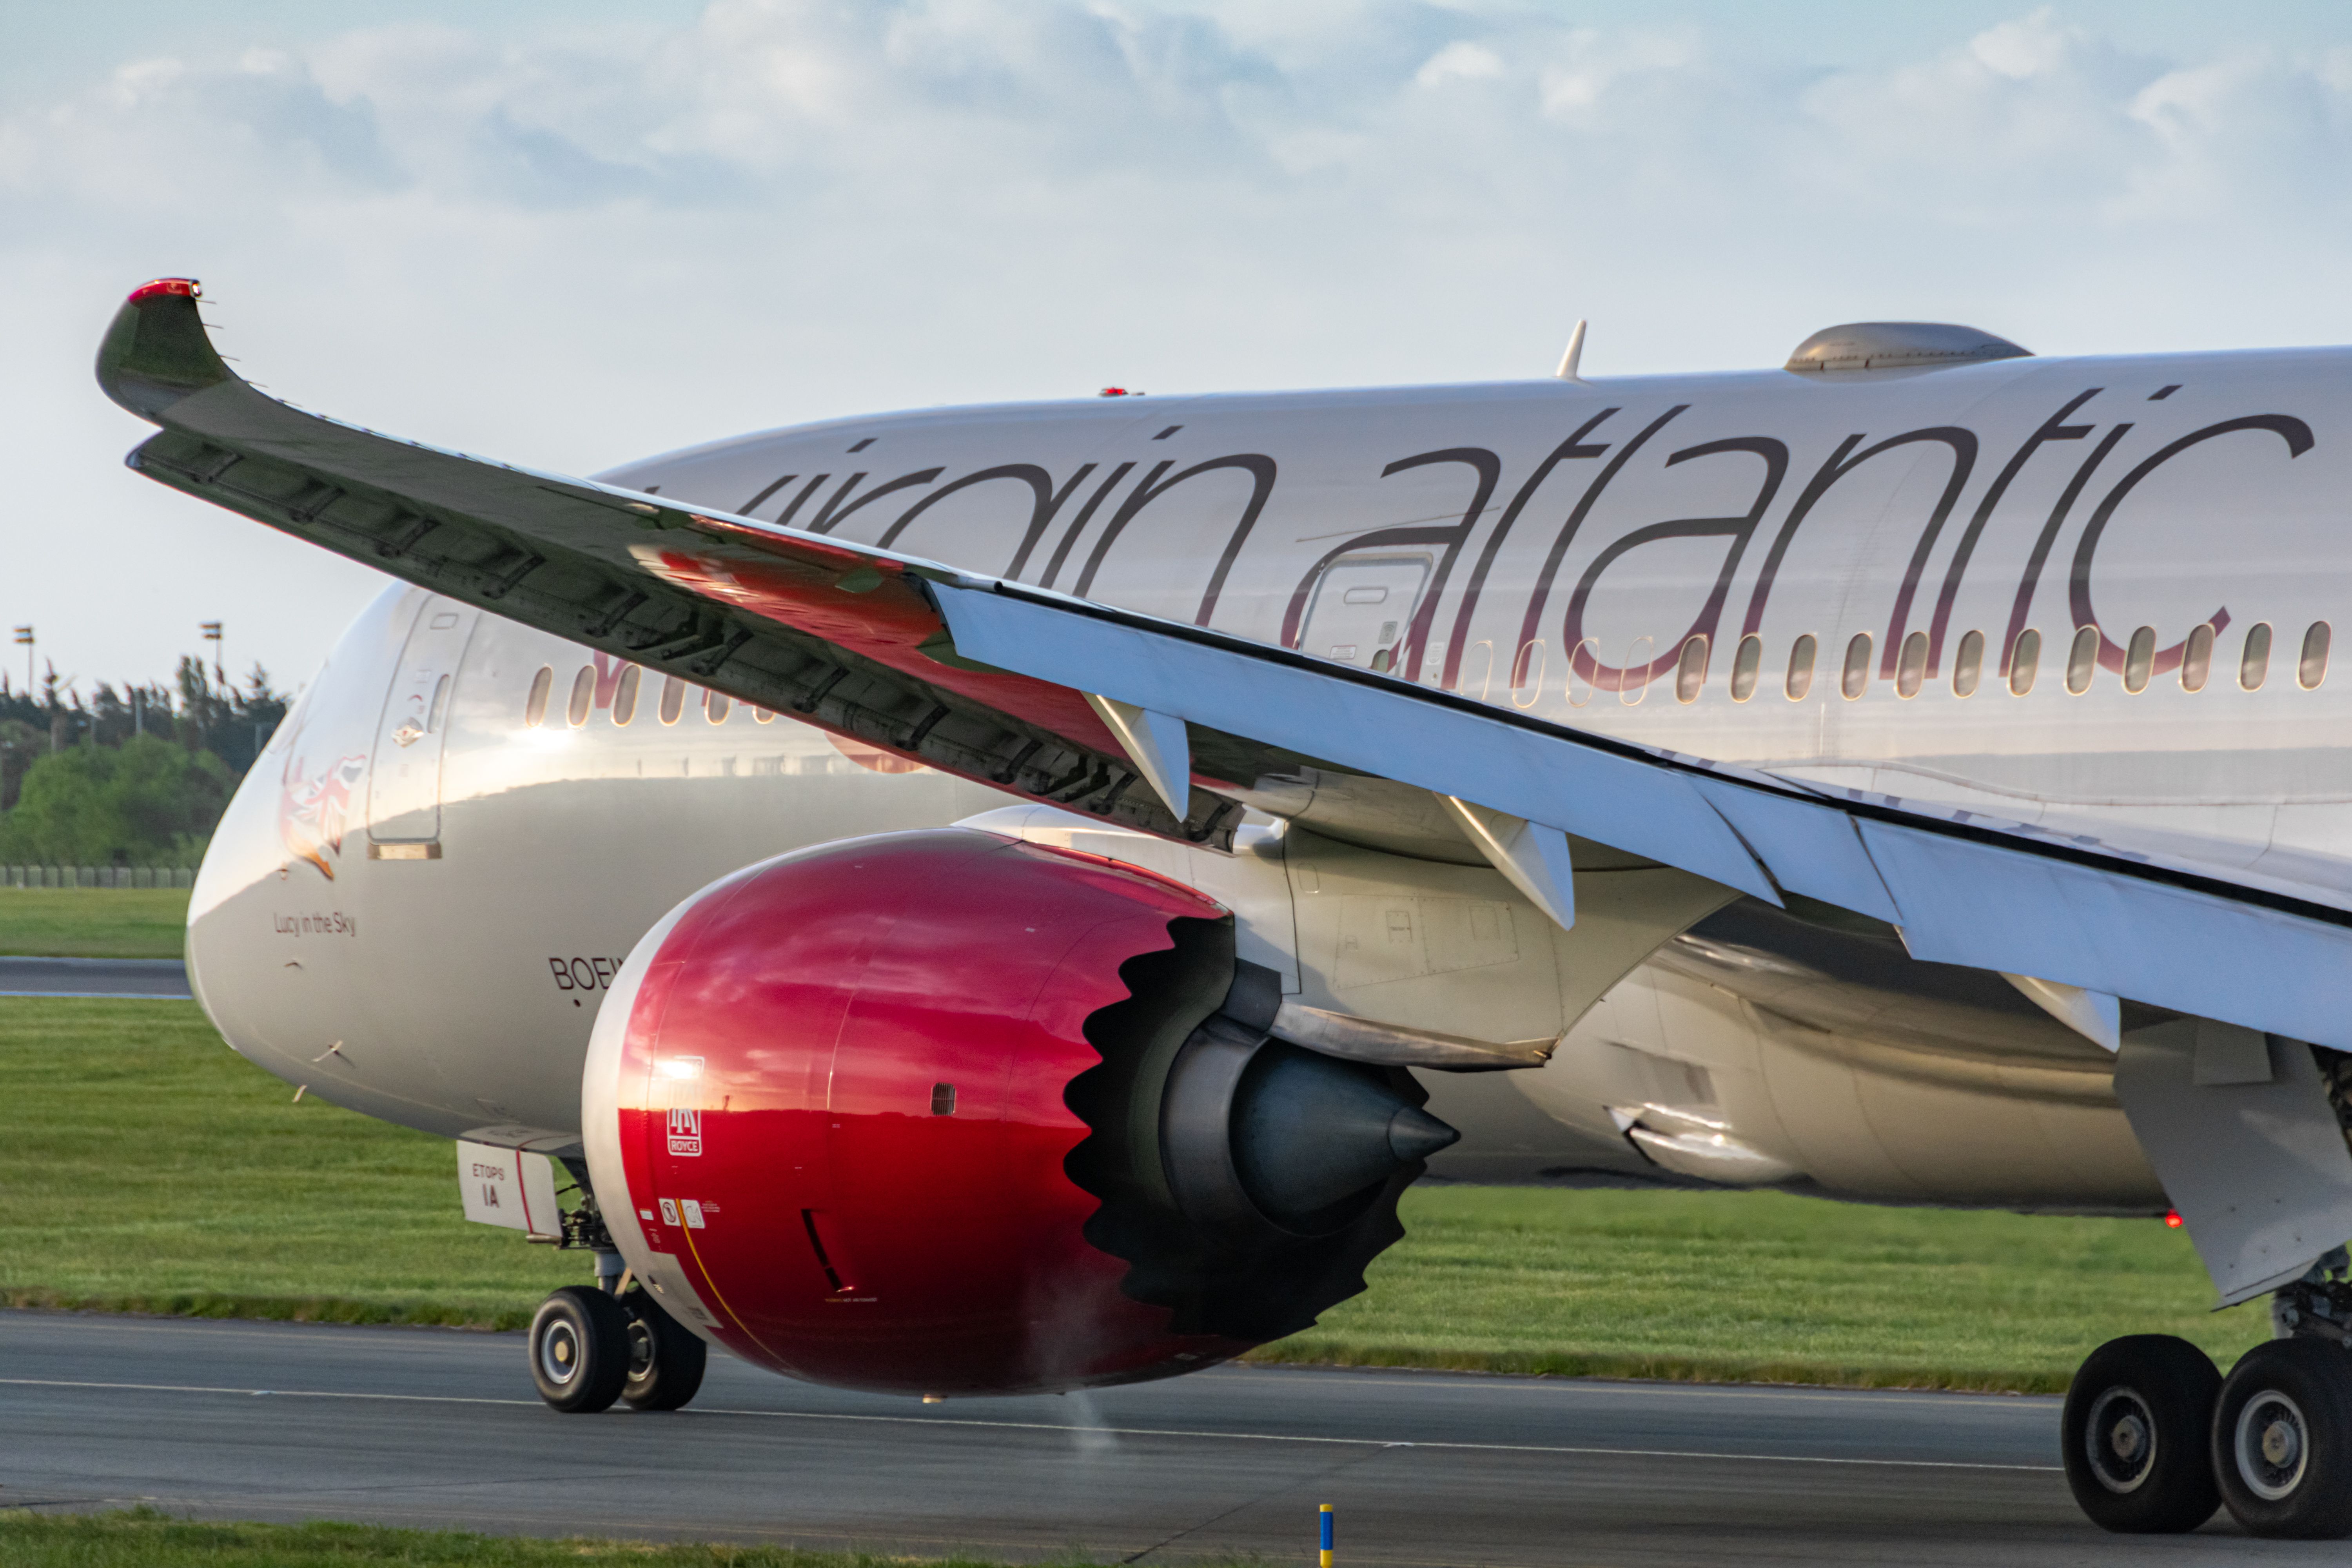 Virgin Atlantic Boeing 787-9